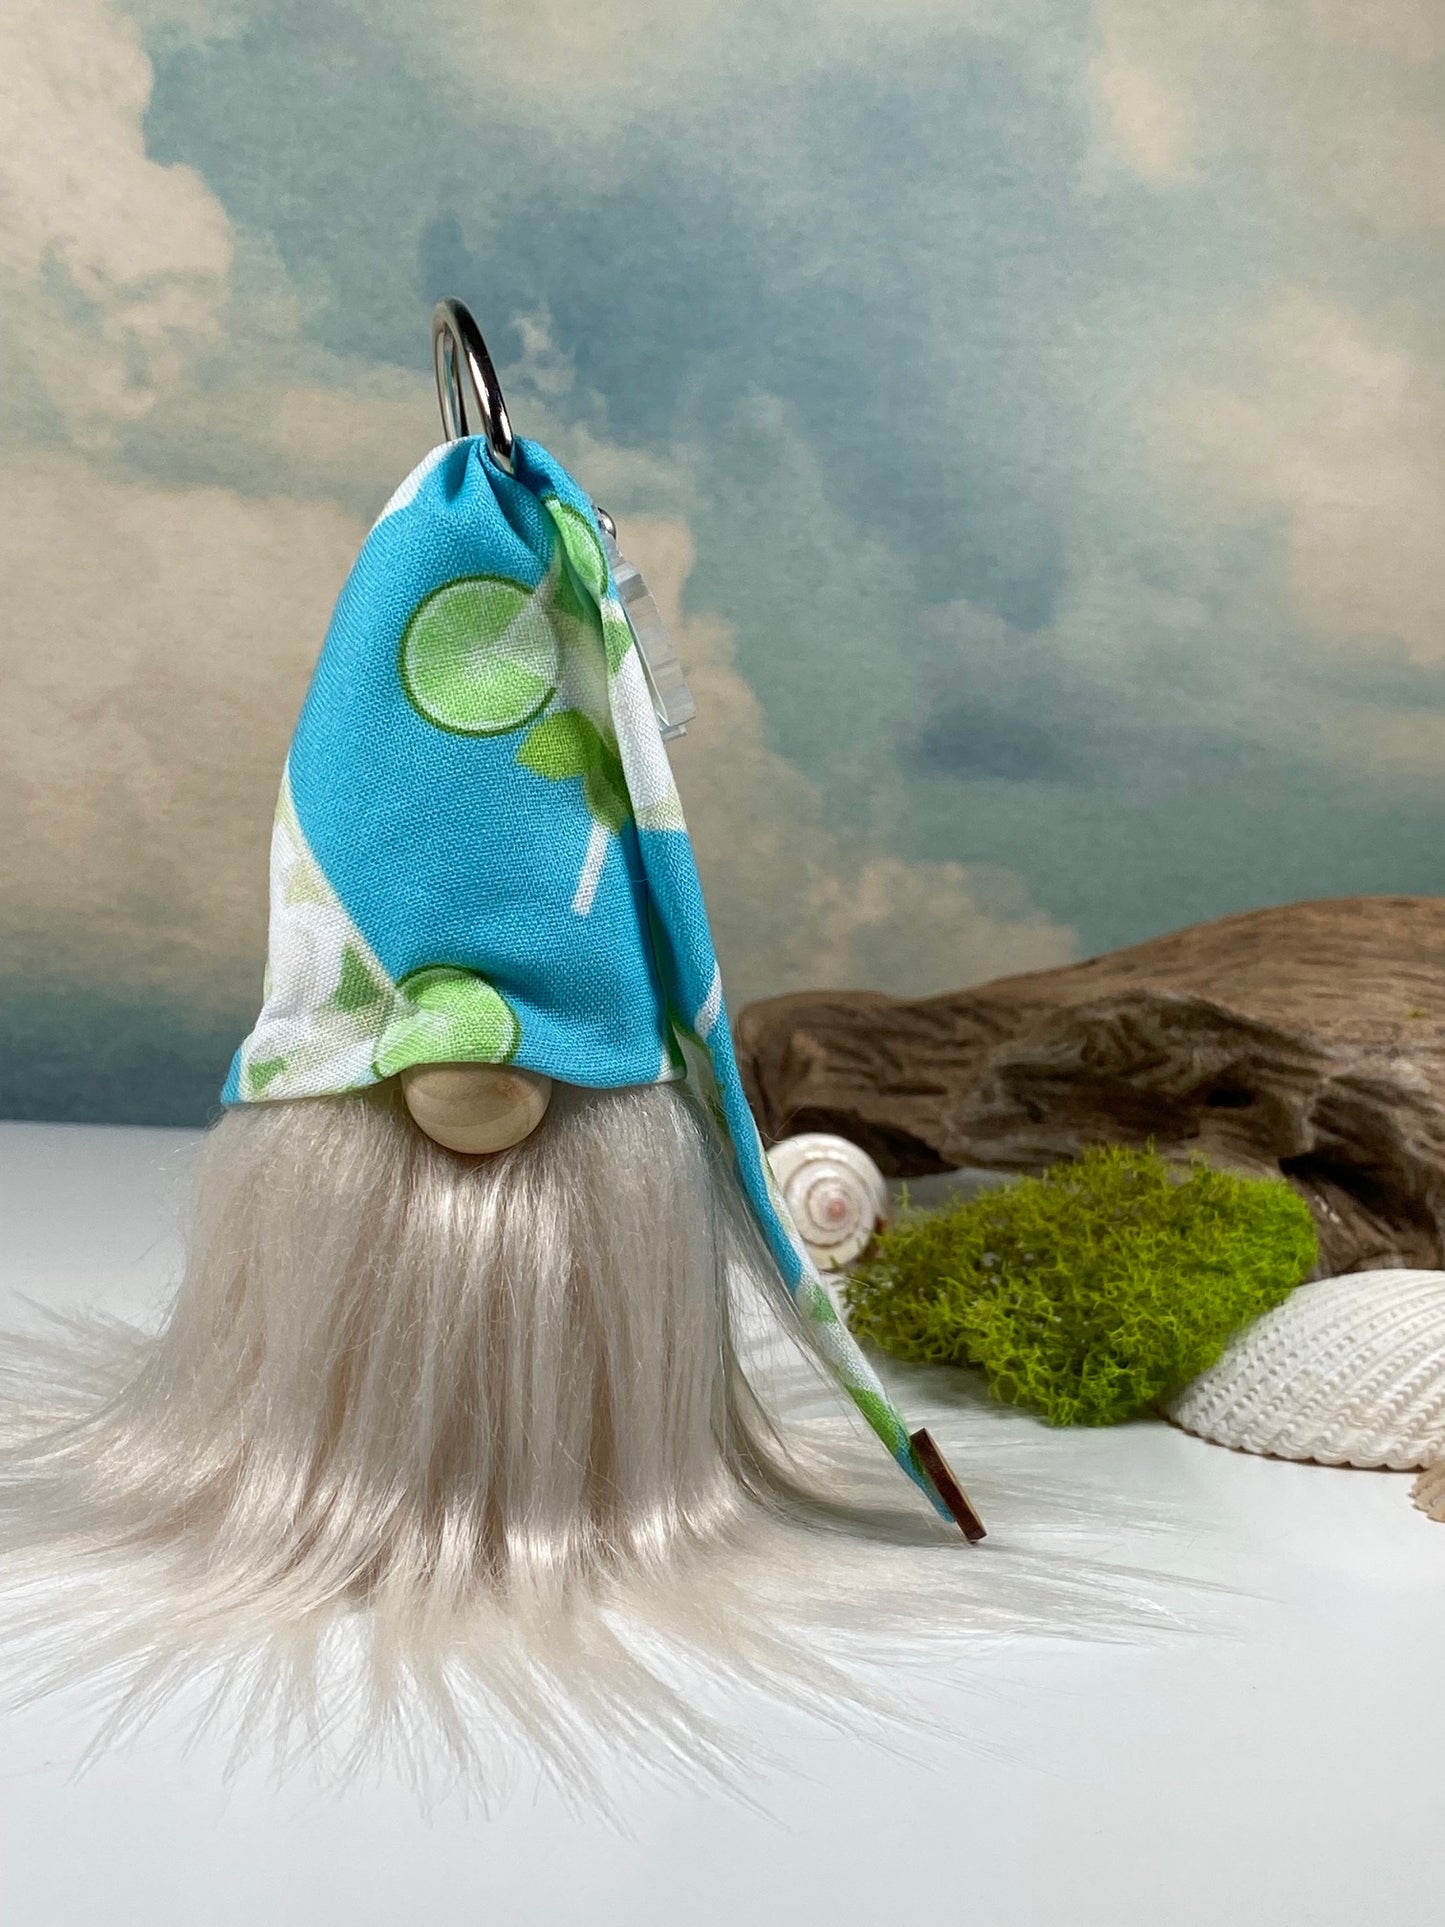 Gulfport Gnome™-Tanned & Tipsy Beach Decor- 4" Plush Mini Vacation Beach Bag Accessory